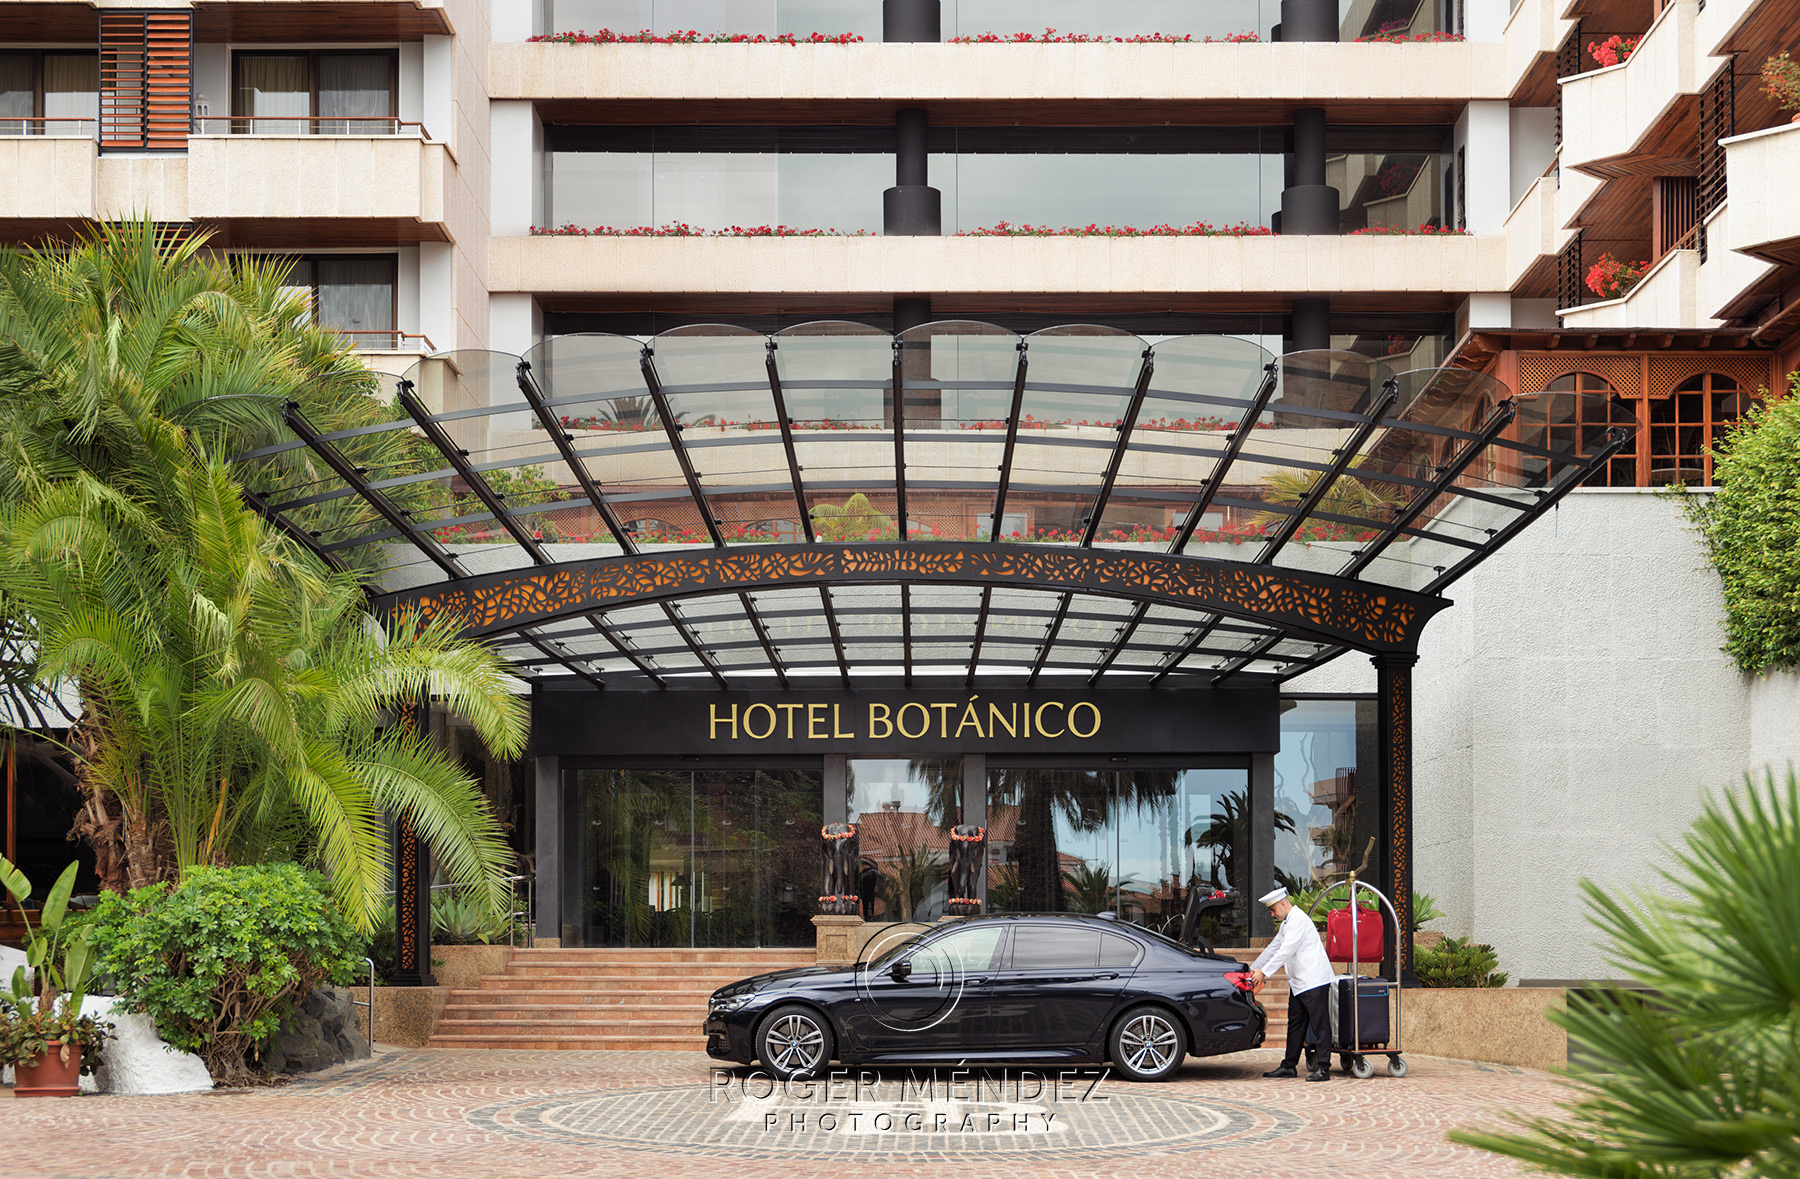 Façade and main entrance of the Gran Luxe Hotel Botánico